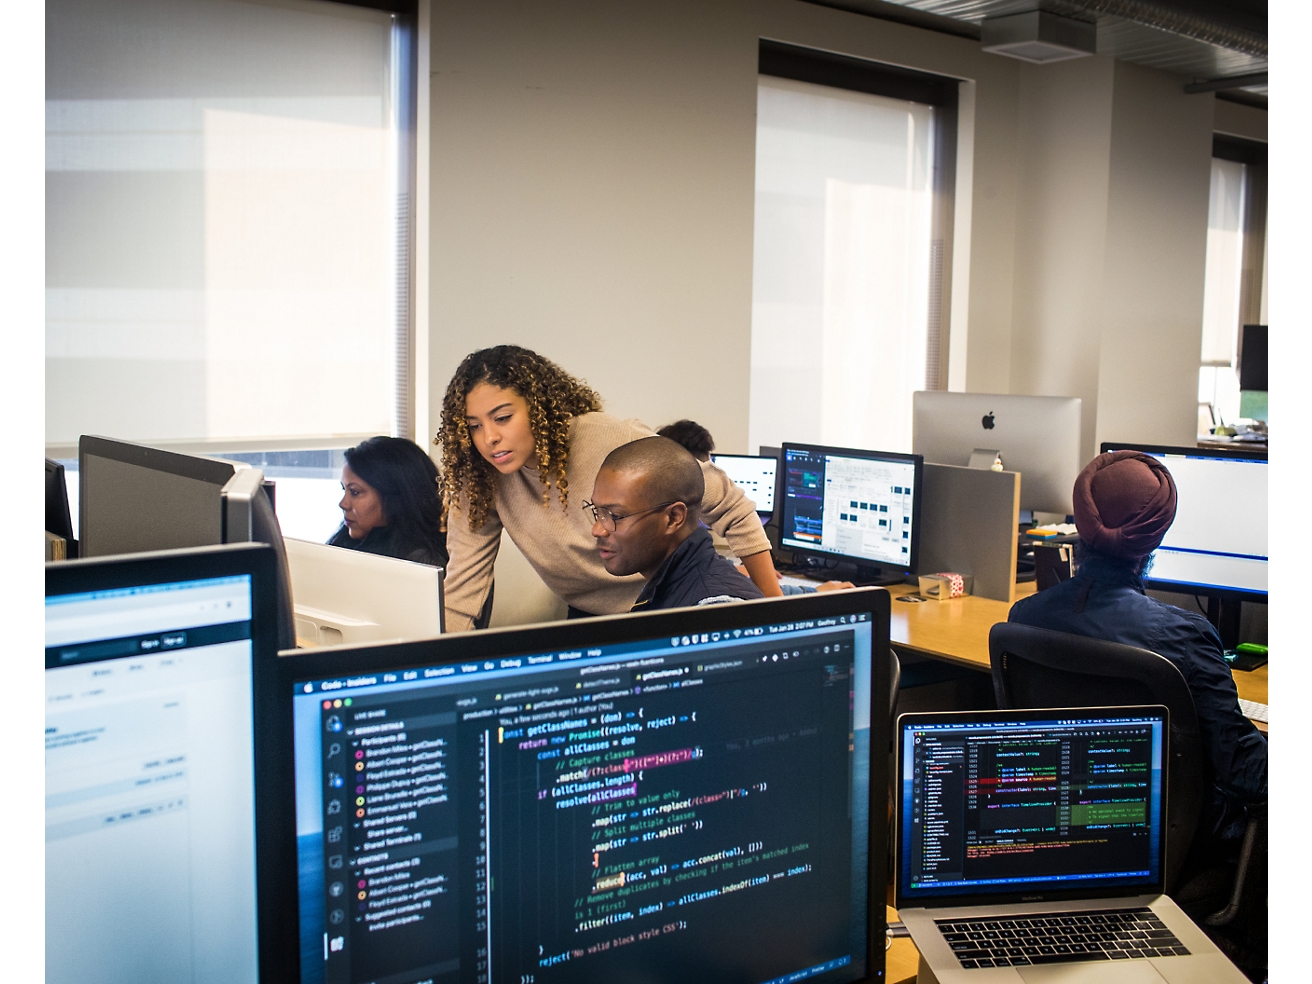 Grupo diverso de profesionales trabajando con ordenadores en una oficina, concentrados en pantallas con diversos códigos y datos visibles.